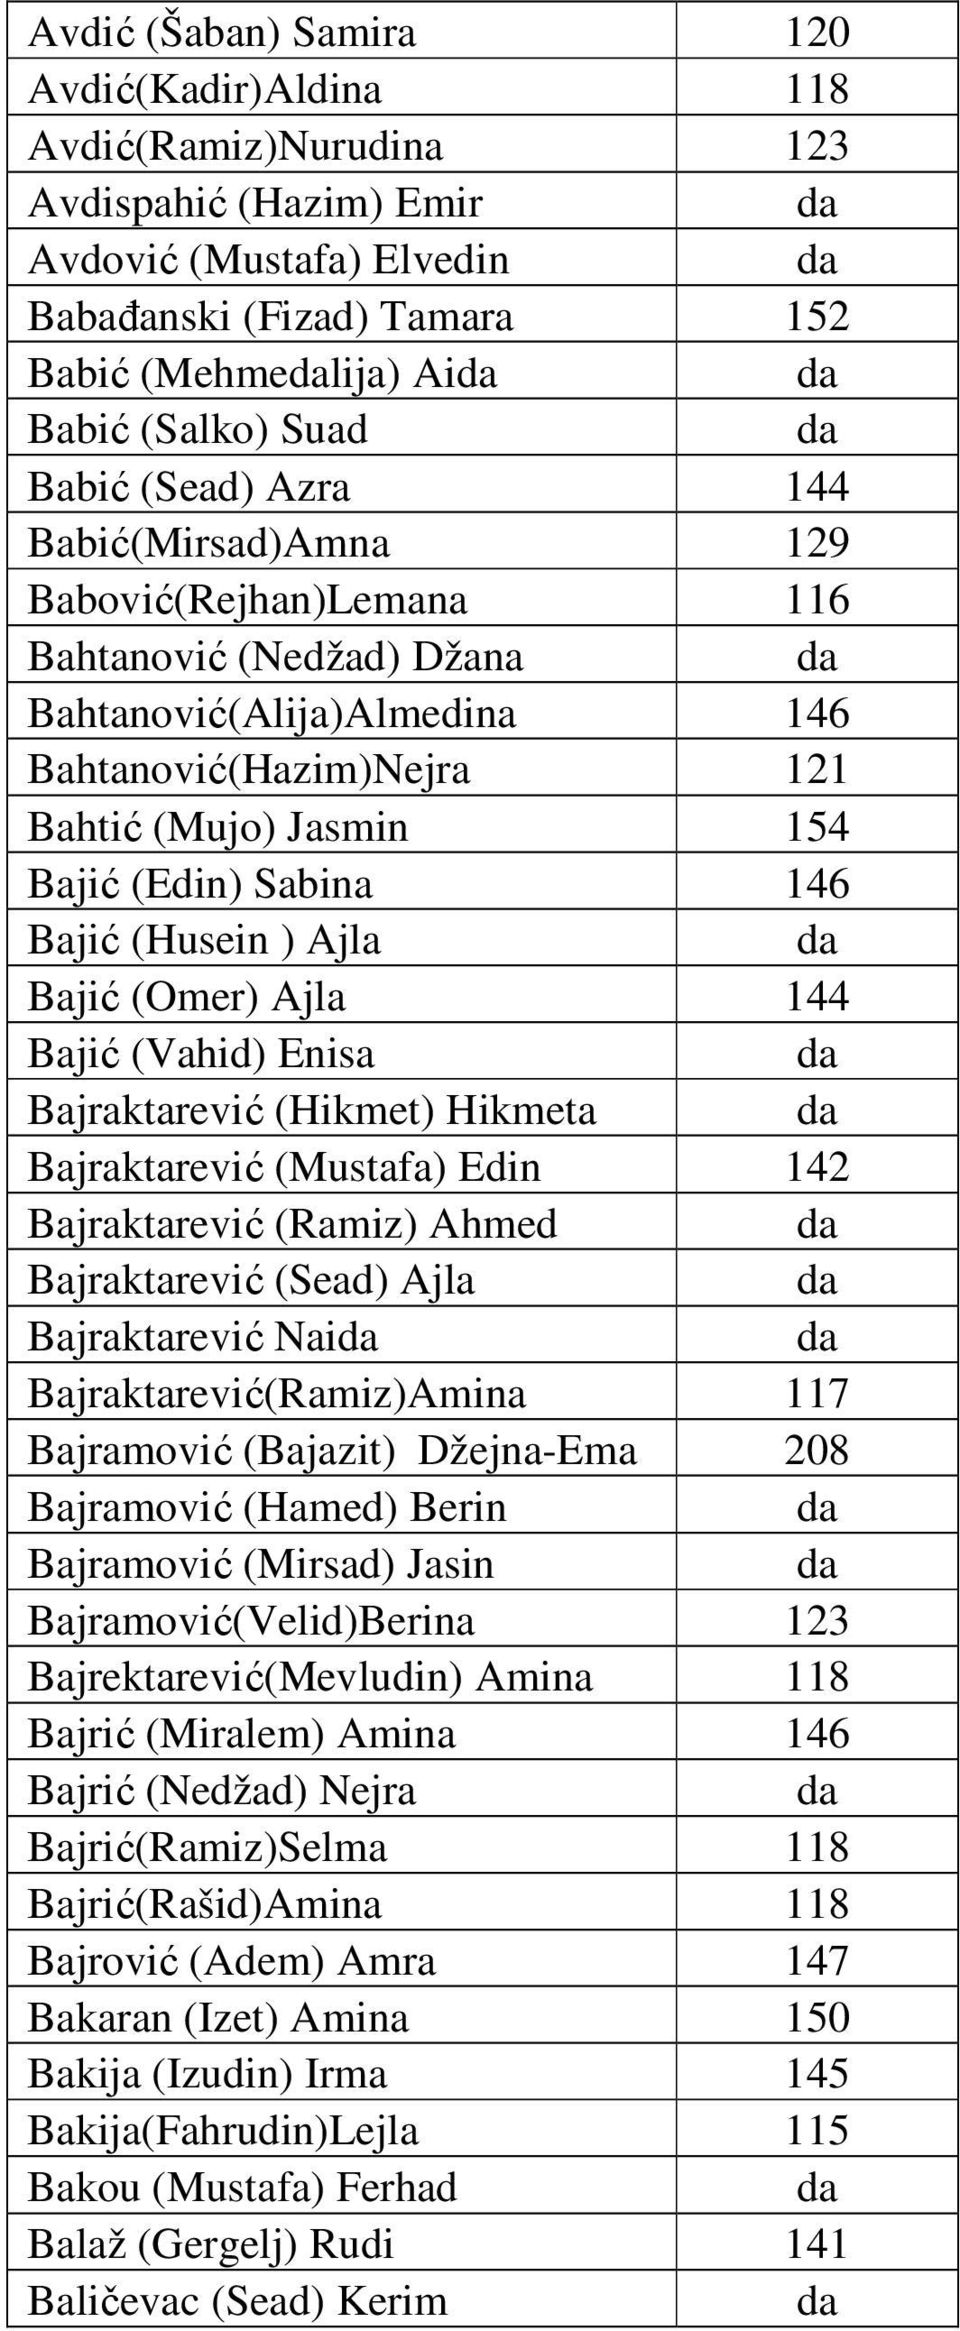 Bajić (Husein ) Ajla Bajić (Omer) Ajla 144 Bajić (Vahid) Enisa Bajraktarević (Hikmet) Hikmeta Bajraktarević (Mustafa) Edin 142 Bajraktarević (Ramiz) Ahmed Bajraktarević (Sead) Ajla Bajraktarević Nai